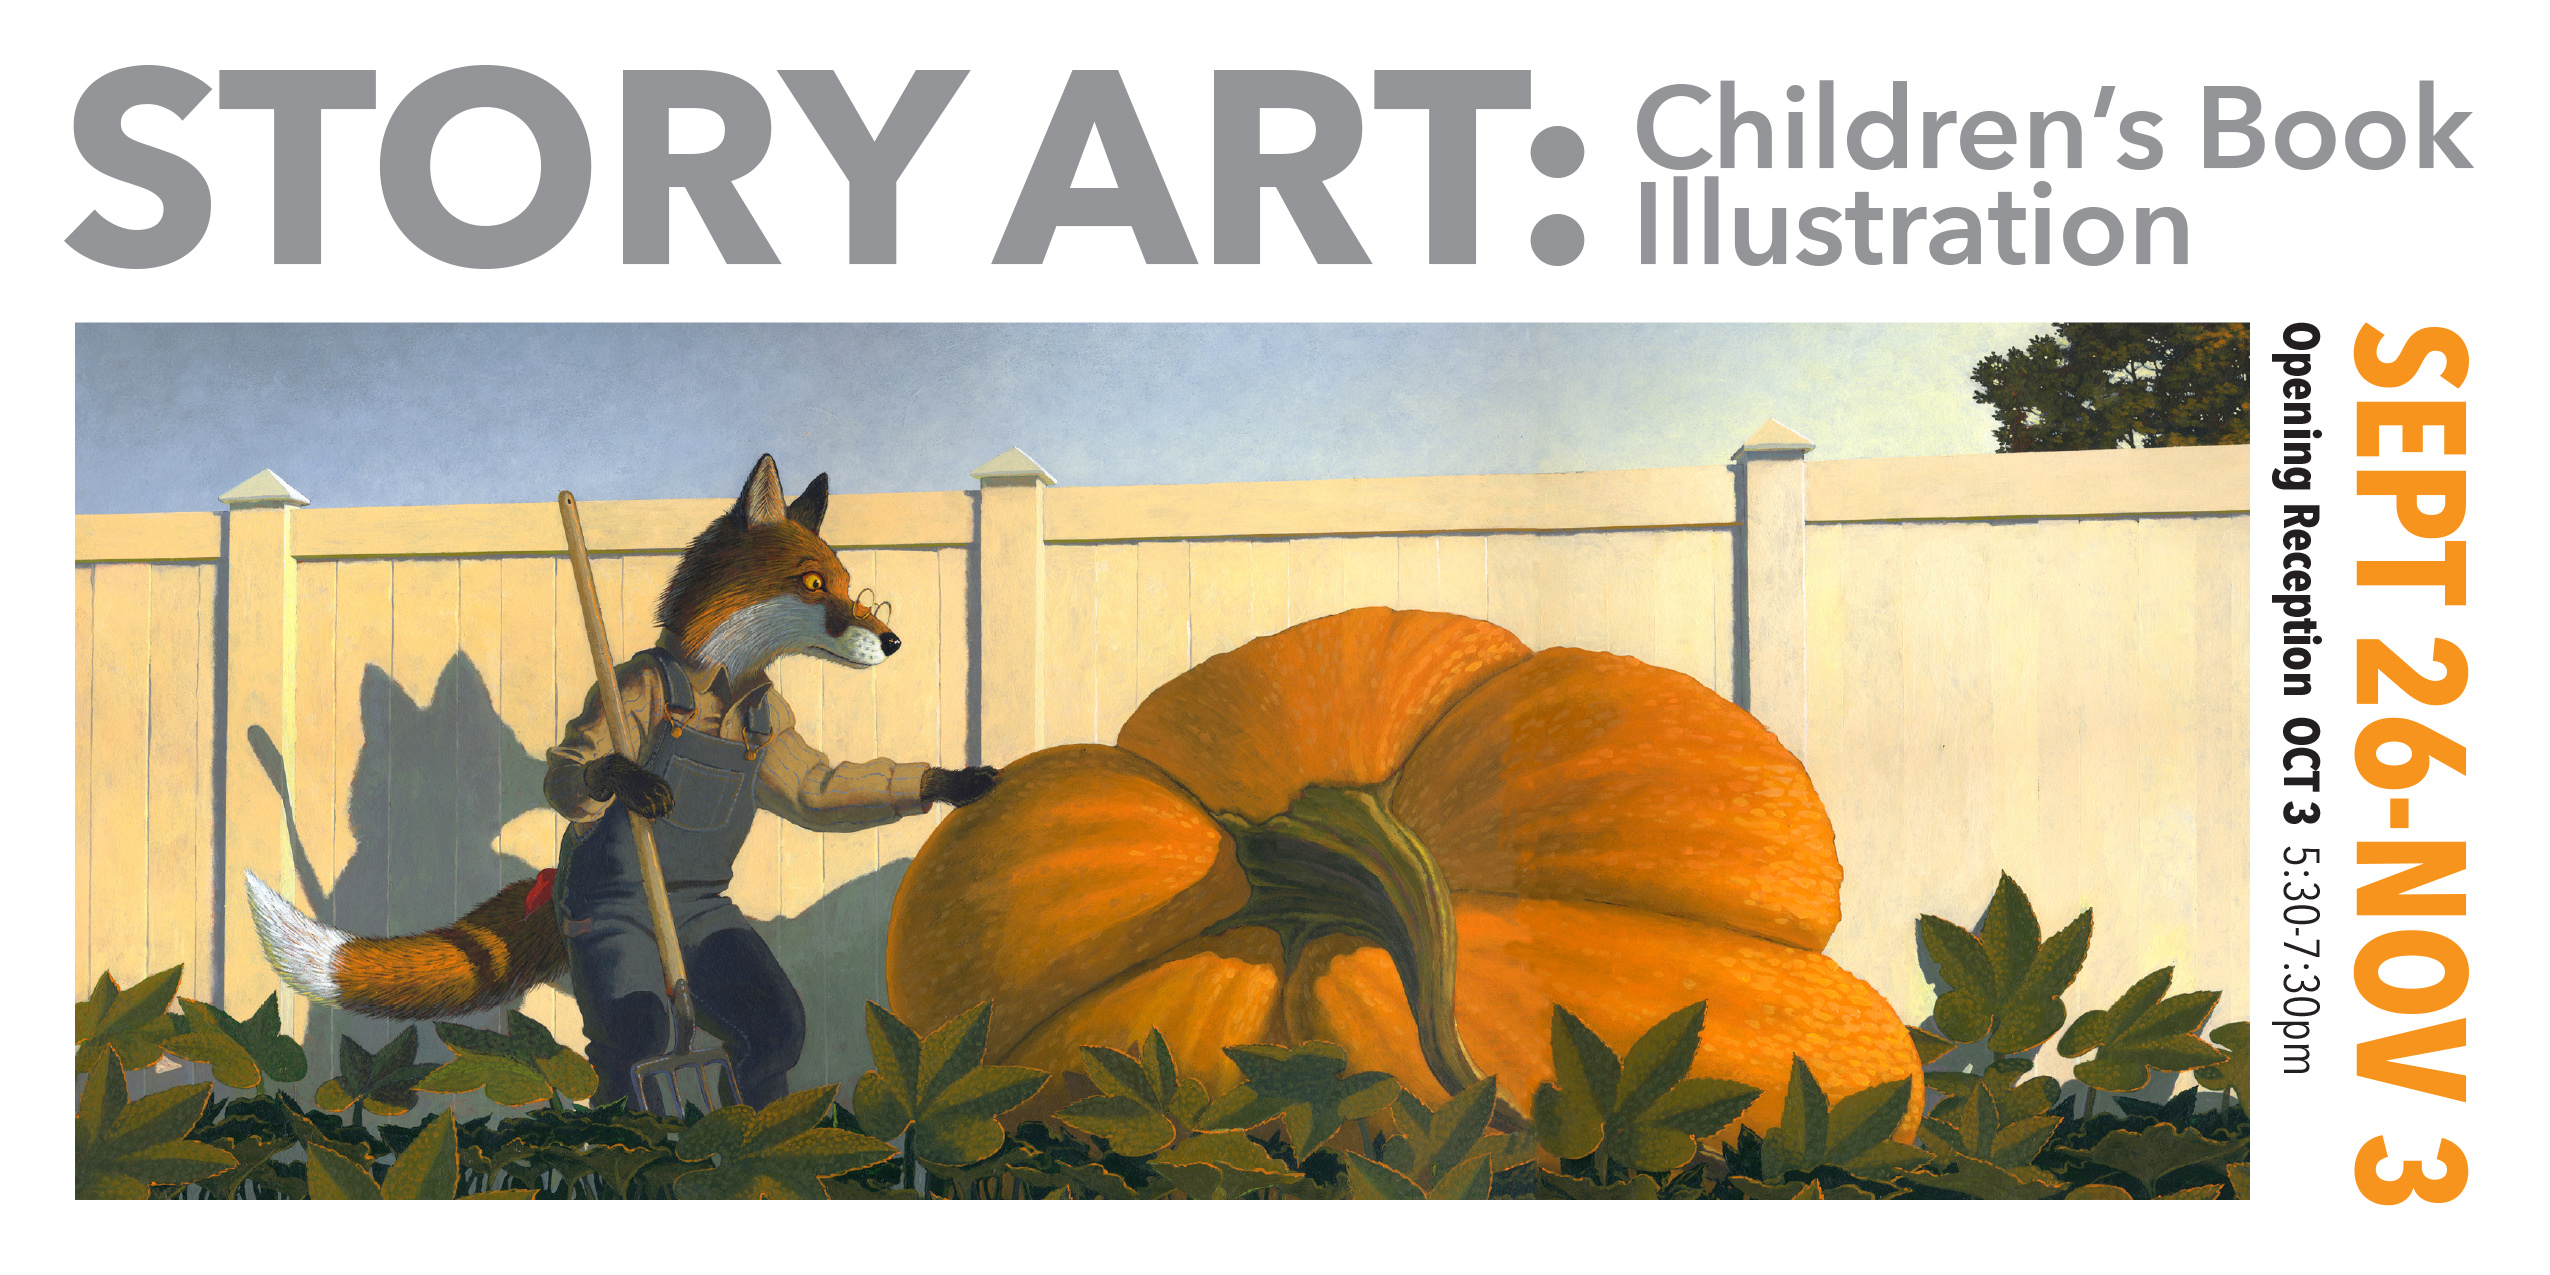 StoryArt: Children's Book Illustration [09/26/19]